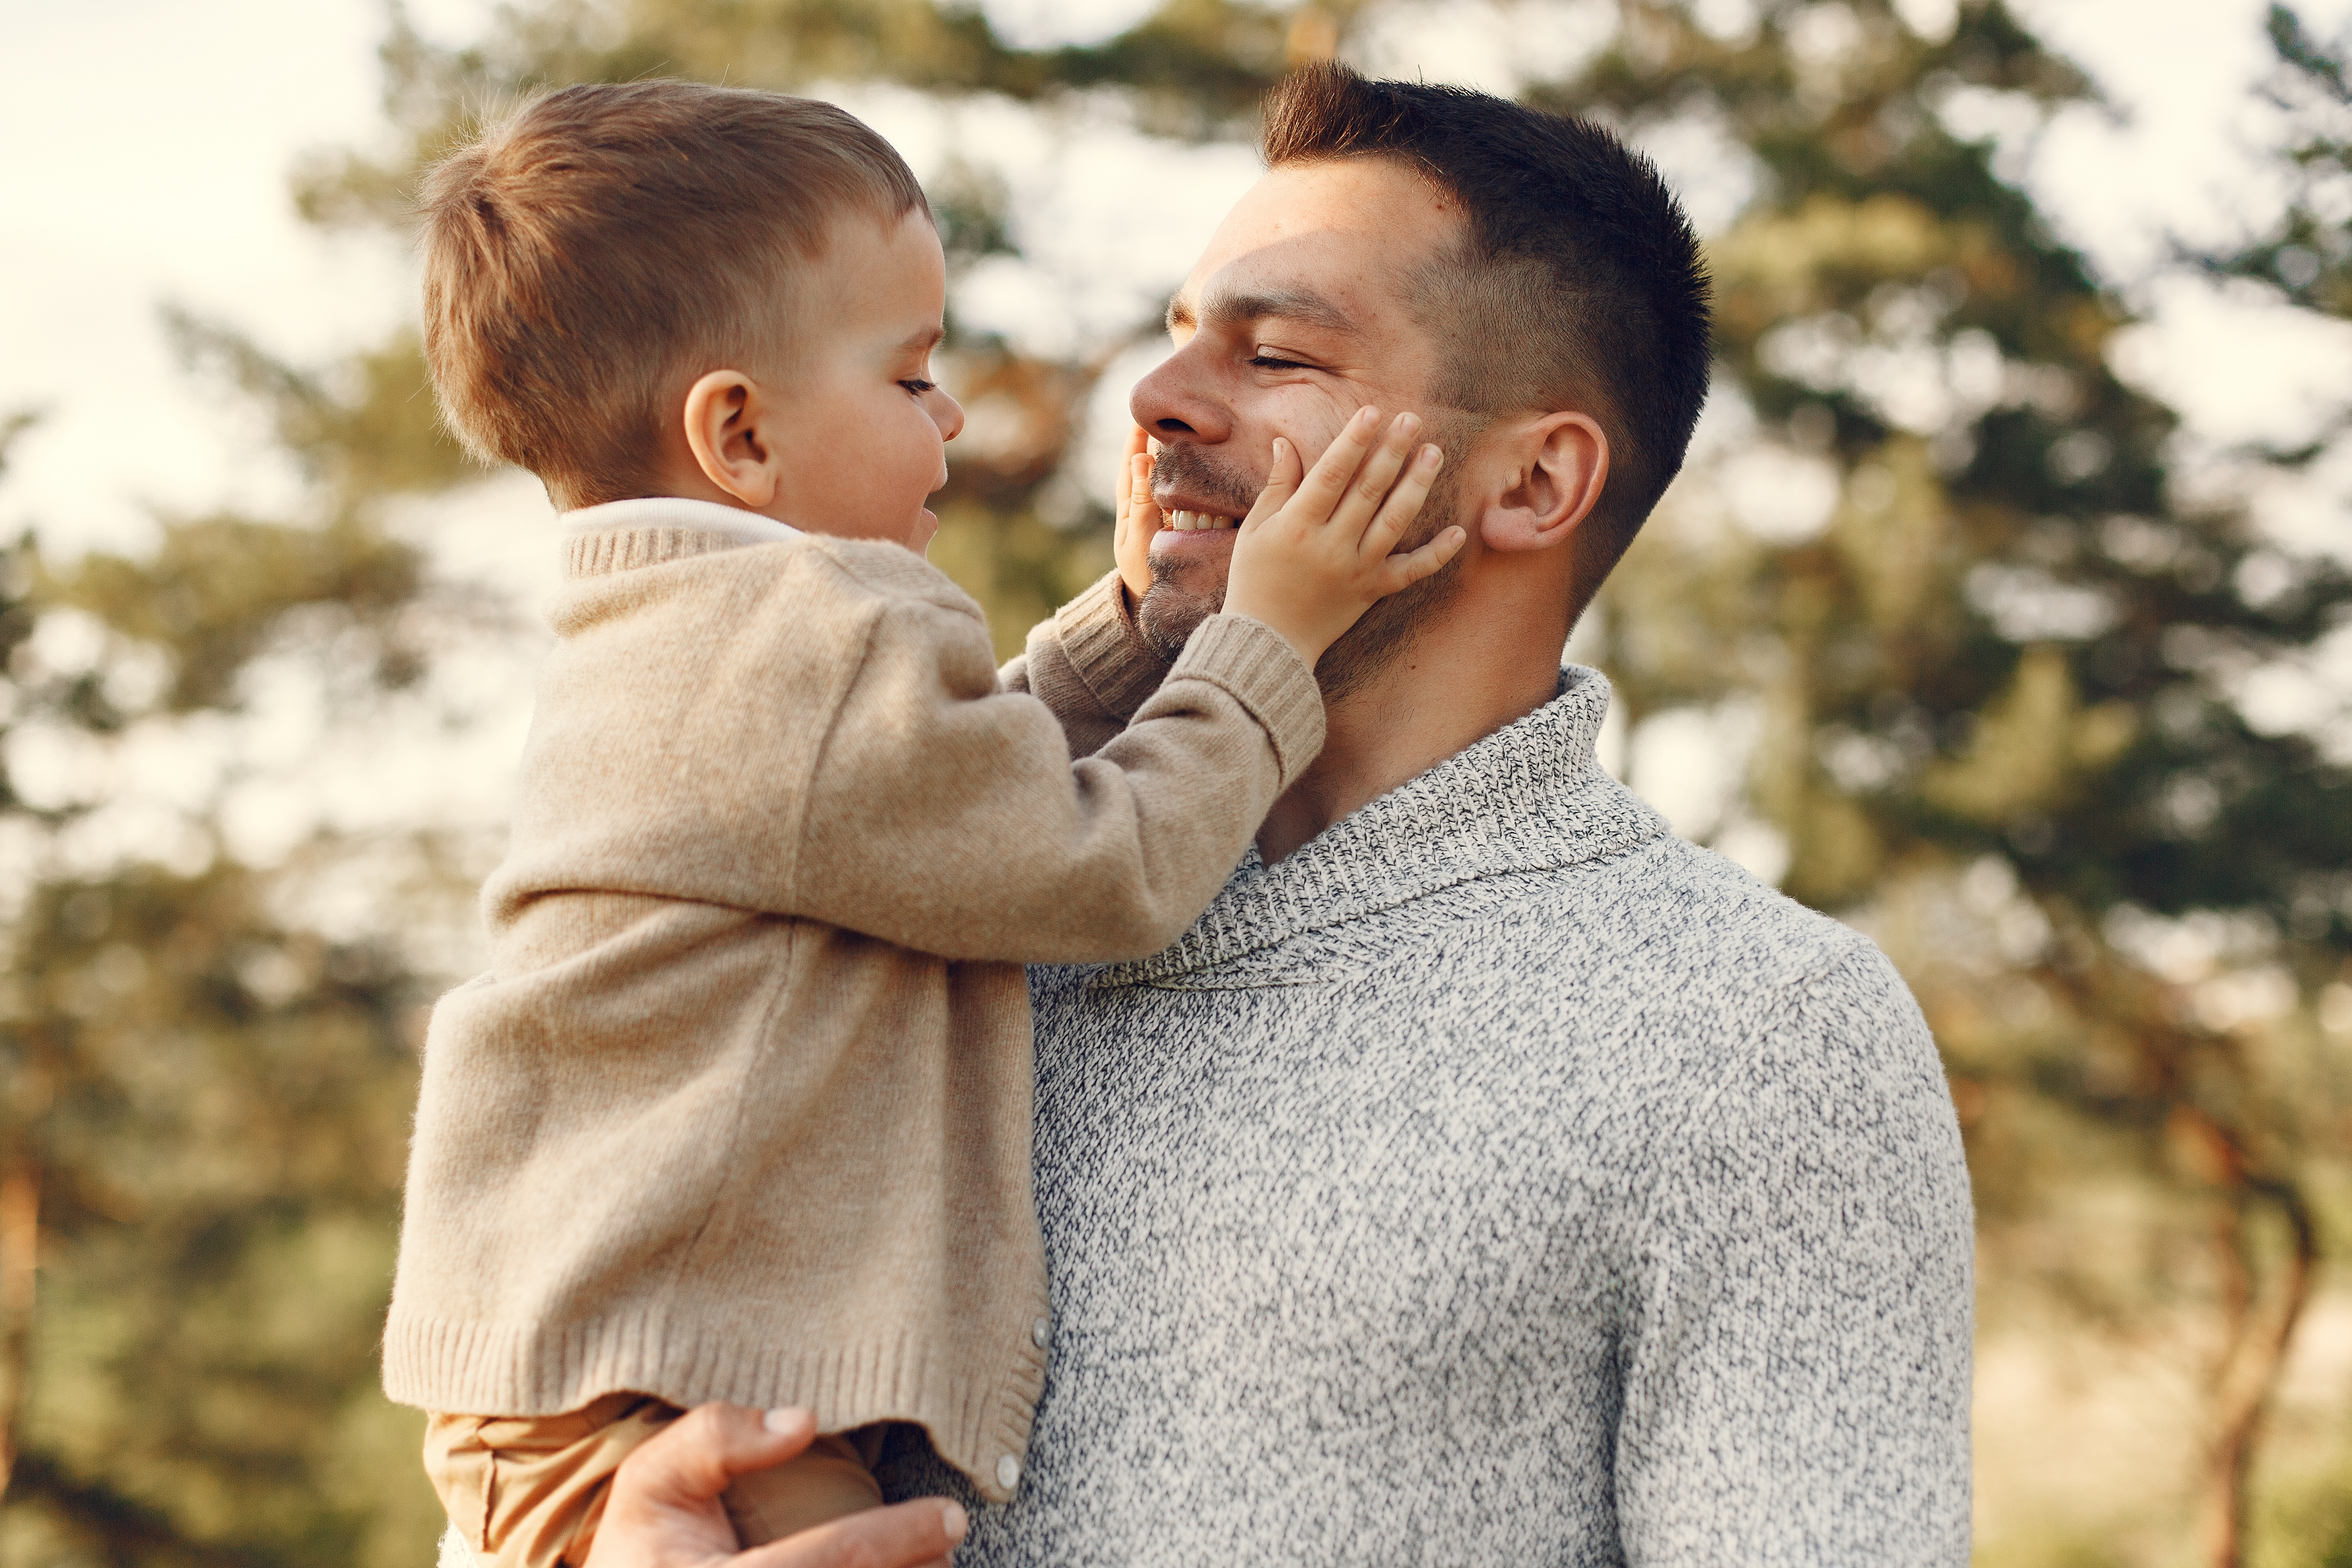 Nuo­šir­dūs san­ty­kiai su tė­čiu – ge­res­ni san­ty­kiai su ki­tais